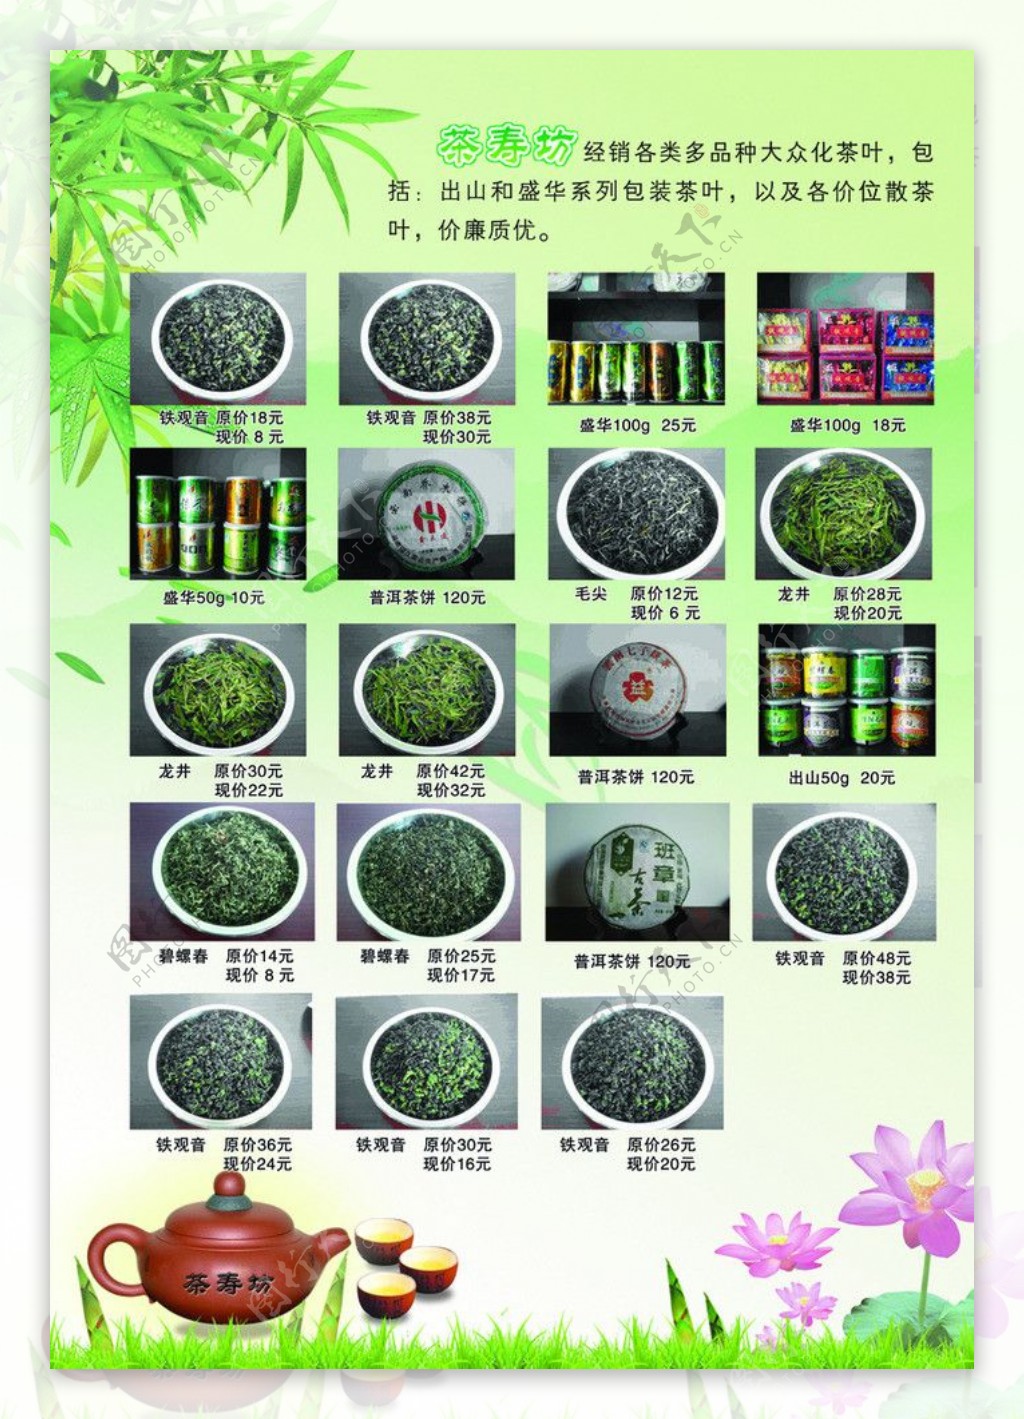 茶寿坊宣传页图片